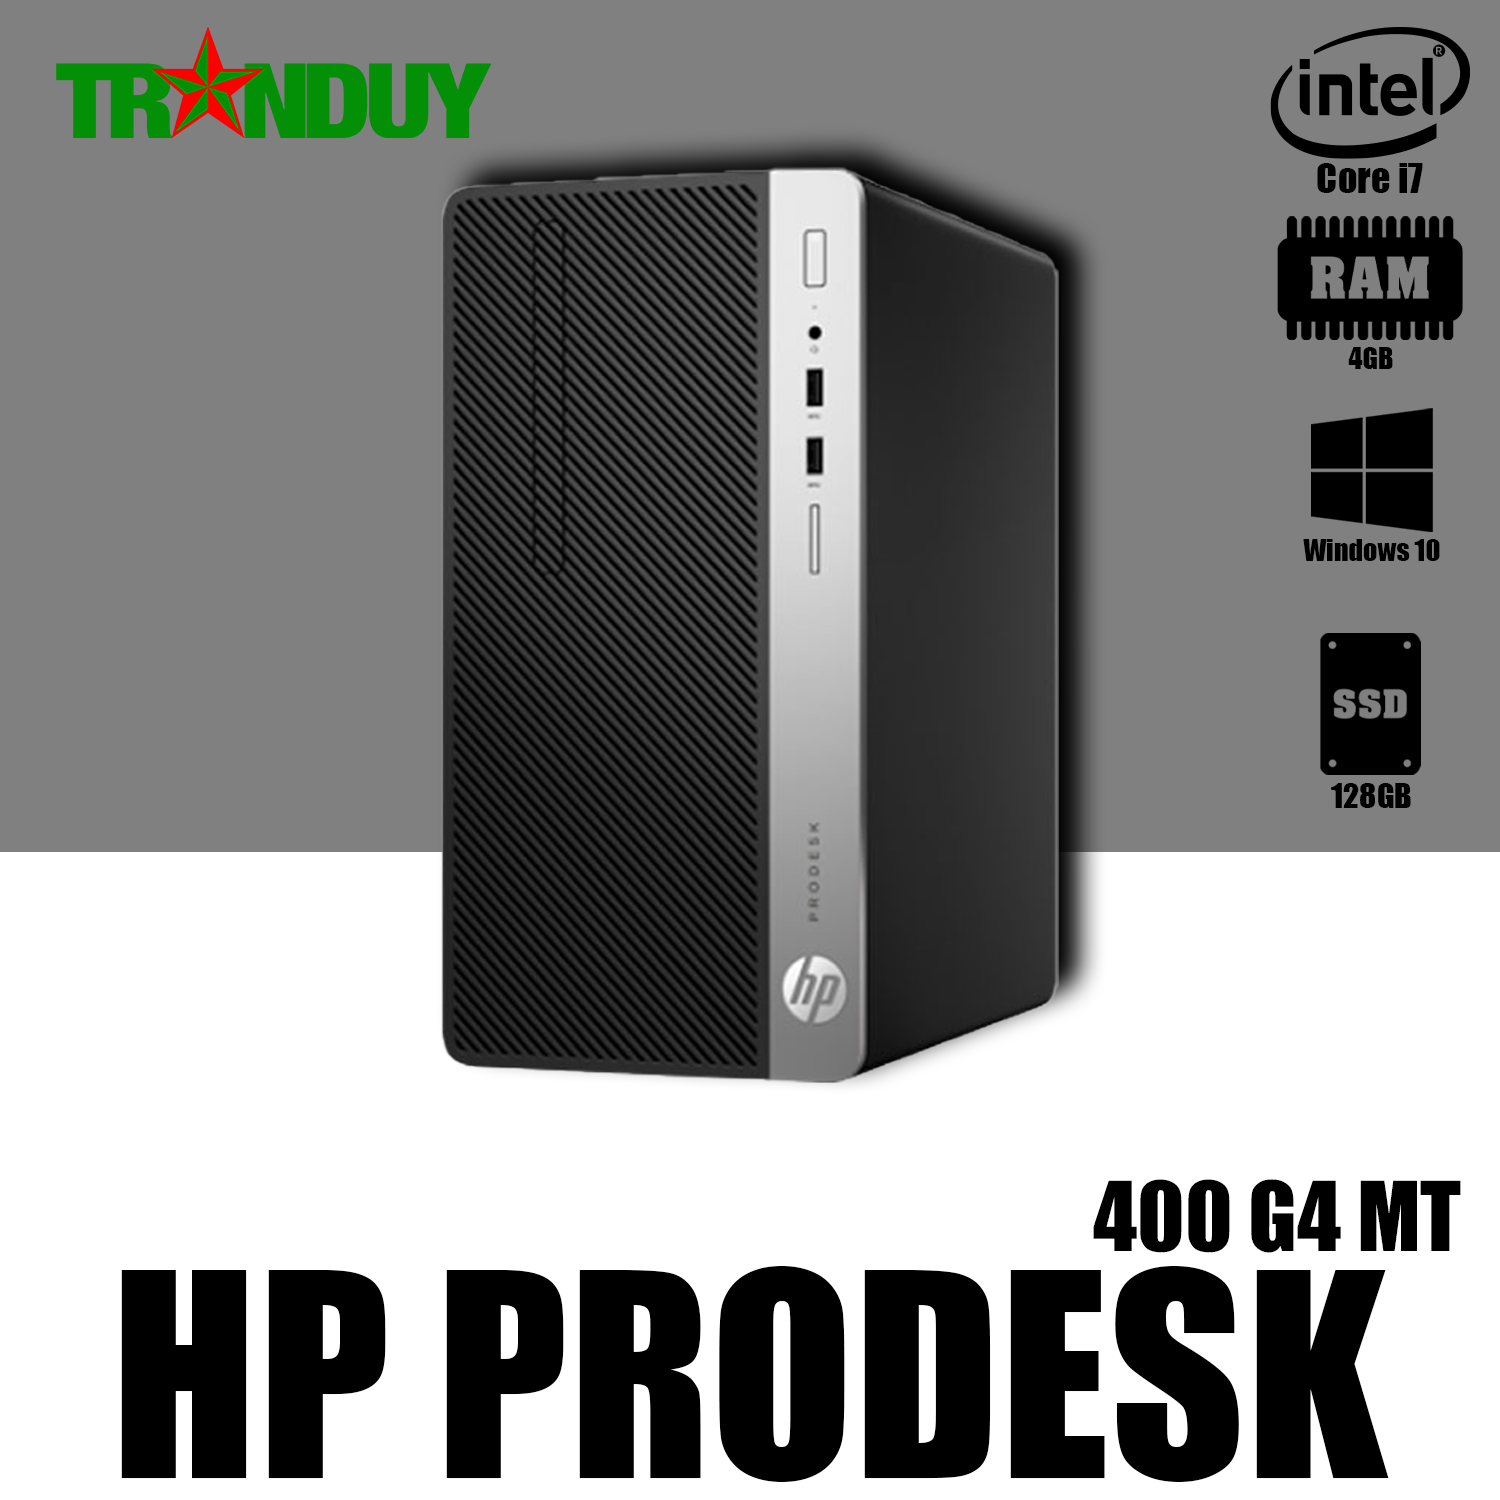 Hp prodesk core i3 7100 4gb 128gb